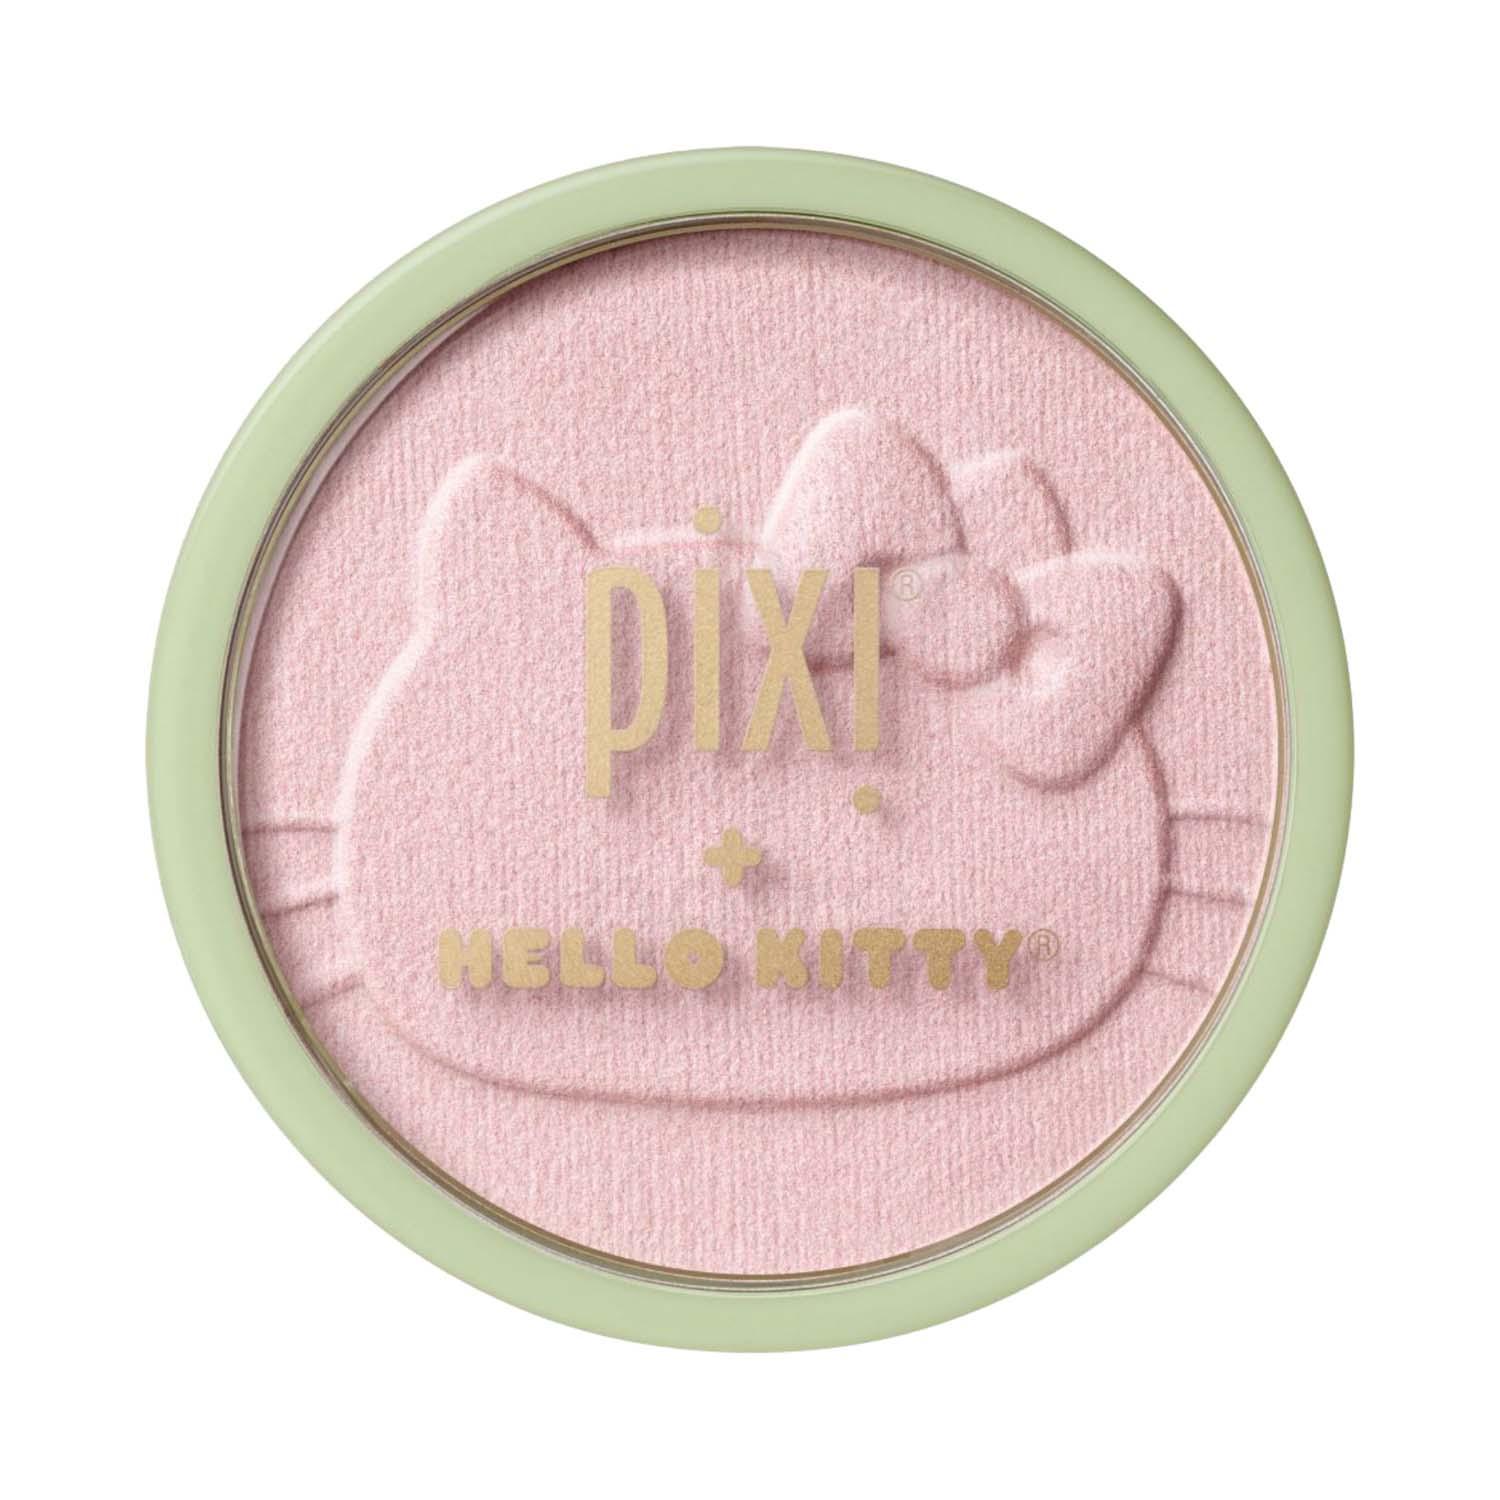 PIXI | PIXI Hello Kitty Hello Glowy Blush Powder - SweetGlow (10 g)